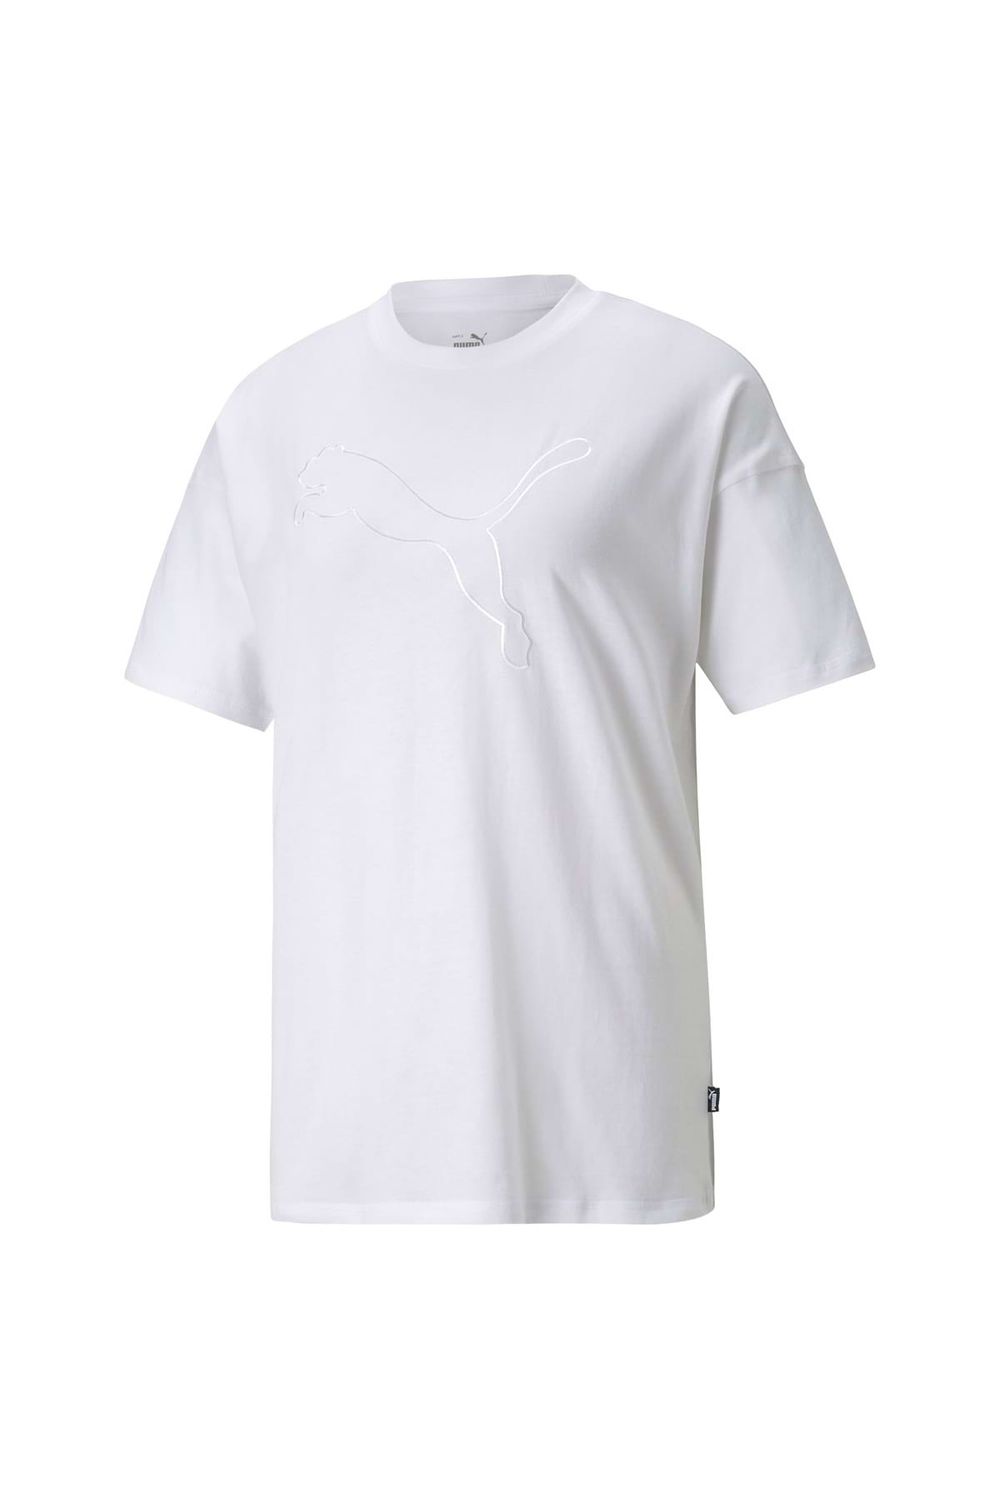 Puma Damen T-Shirt - HER Tee, Rundhals, Logo, Kurzarm, uni - Trendyol